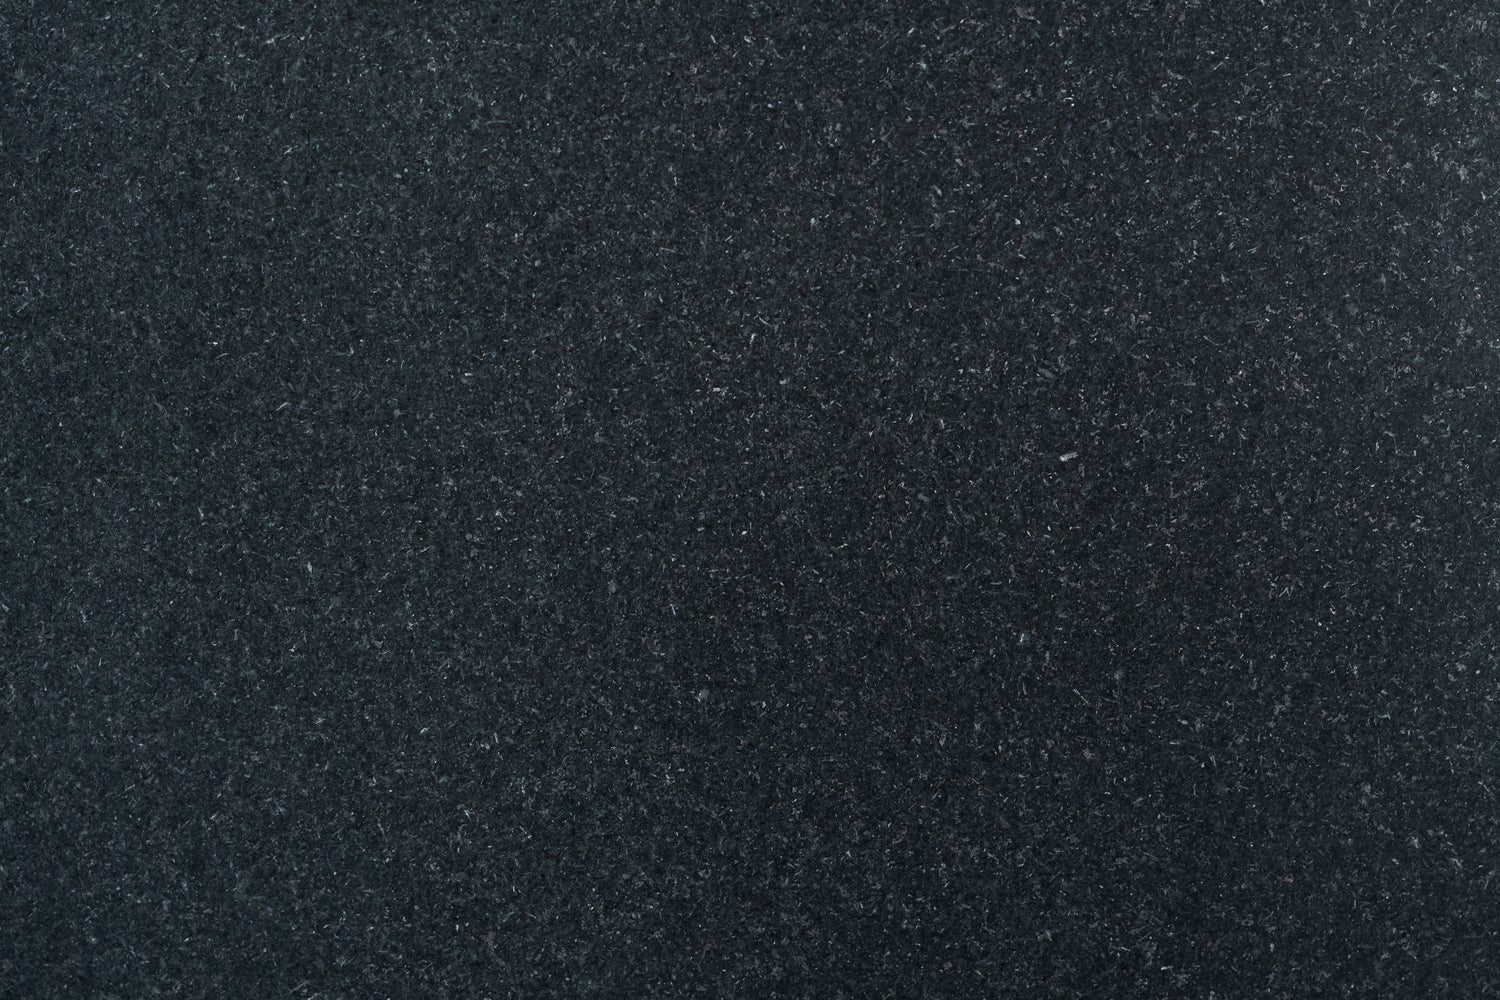 Full Tile Sample - Absolute Black Granite Tile - 12" x 12" x 3/8" Honed